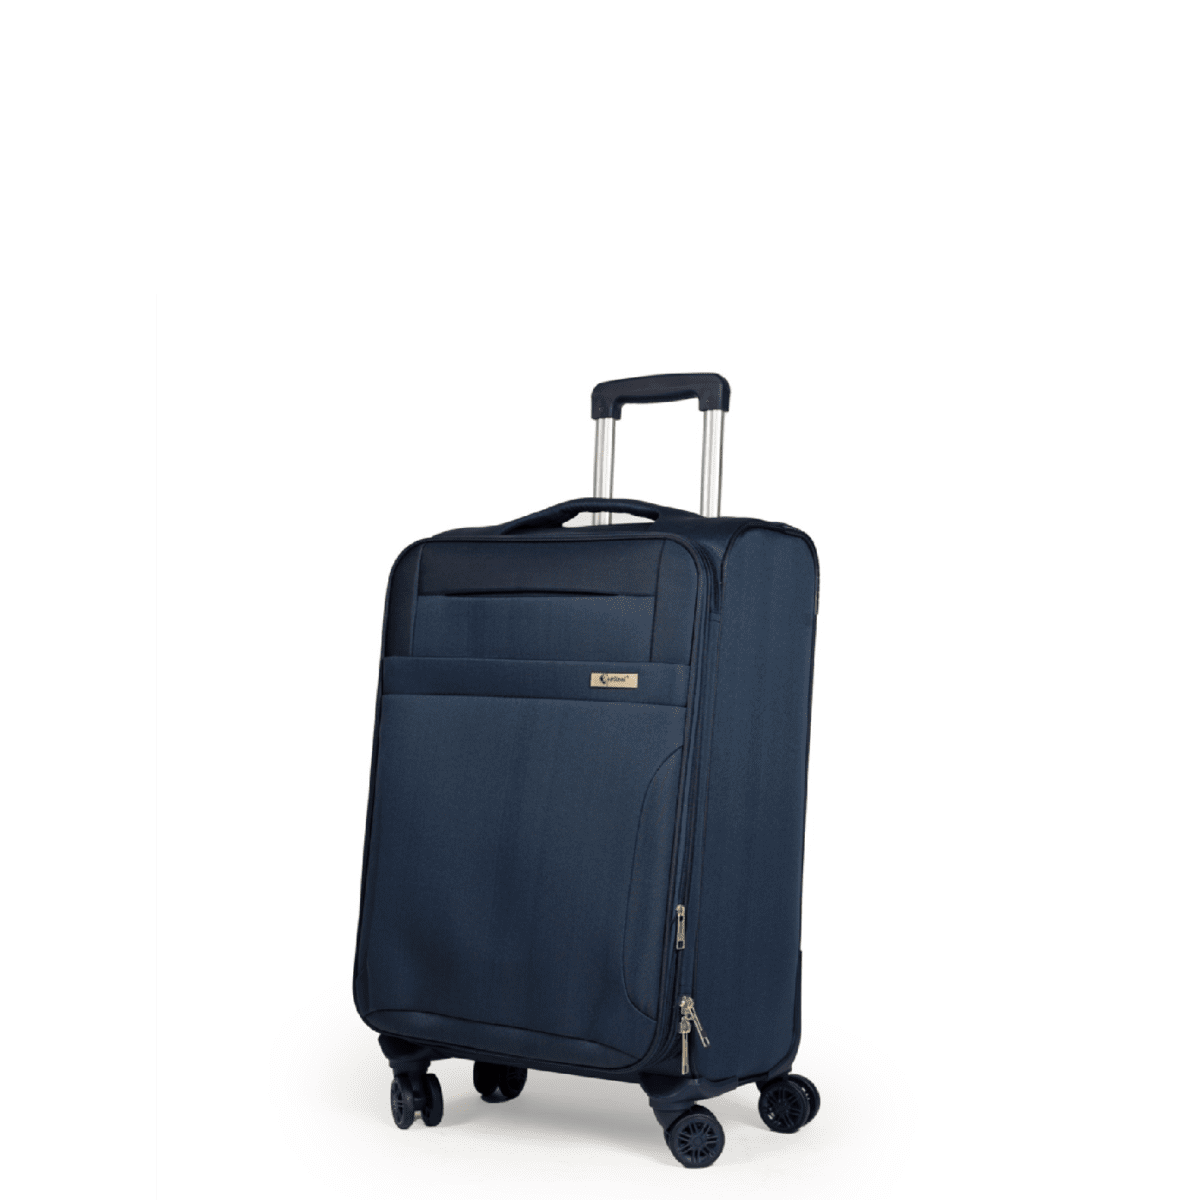 Βαλίτσα χειραποσκευή(καμπίνας) με διπλά ροδάκια , tsa lock από υφασμάτινο υλικό σε μπλε , επεκτάσιμη .